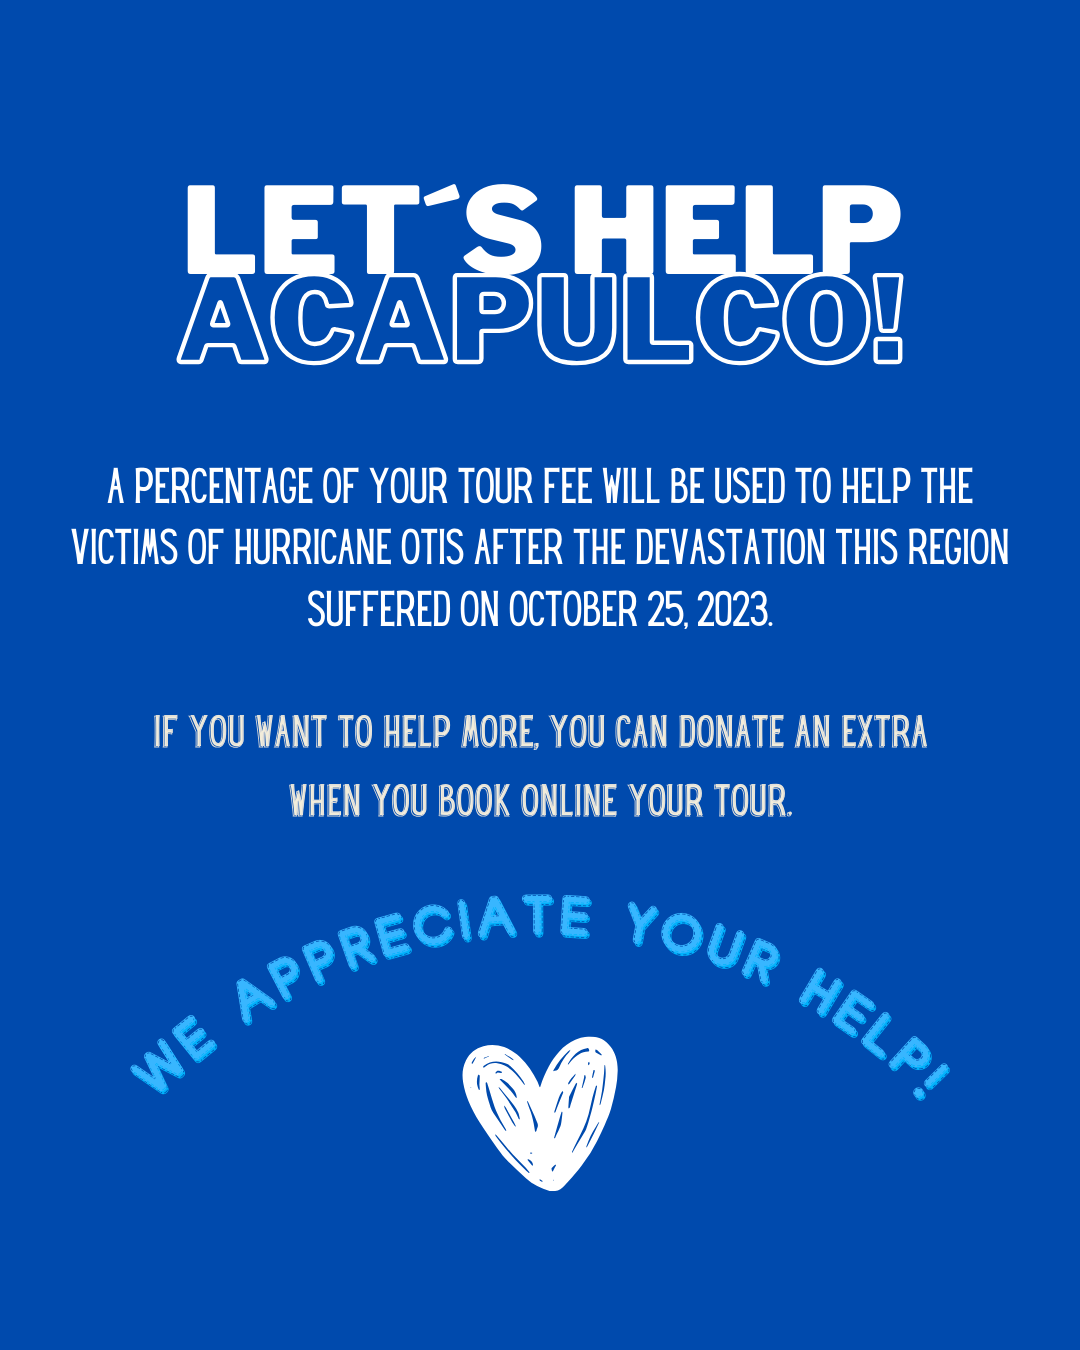 Copia de Let´s Help Acapulco! 1.png